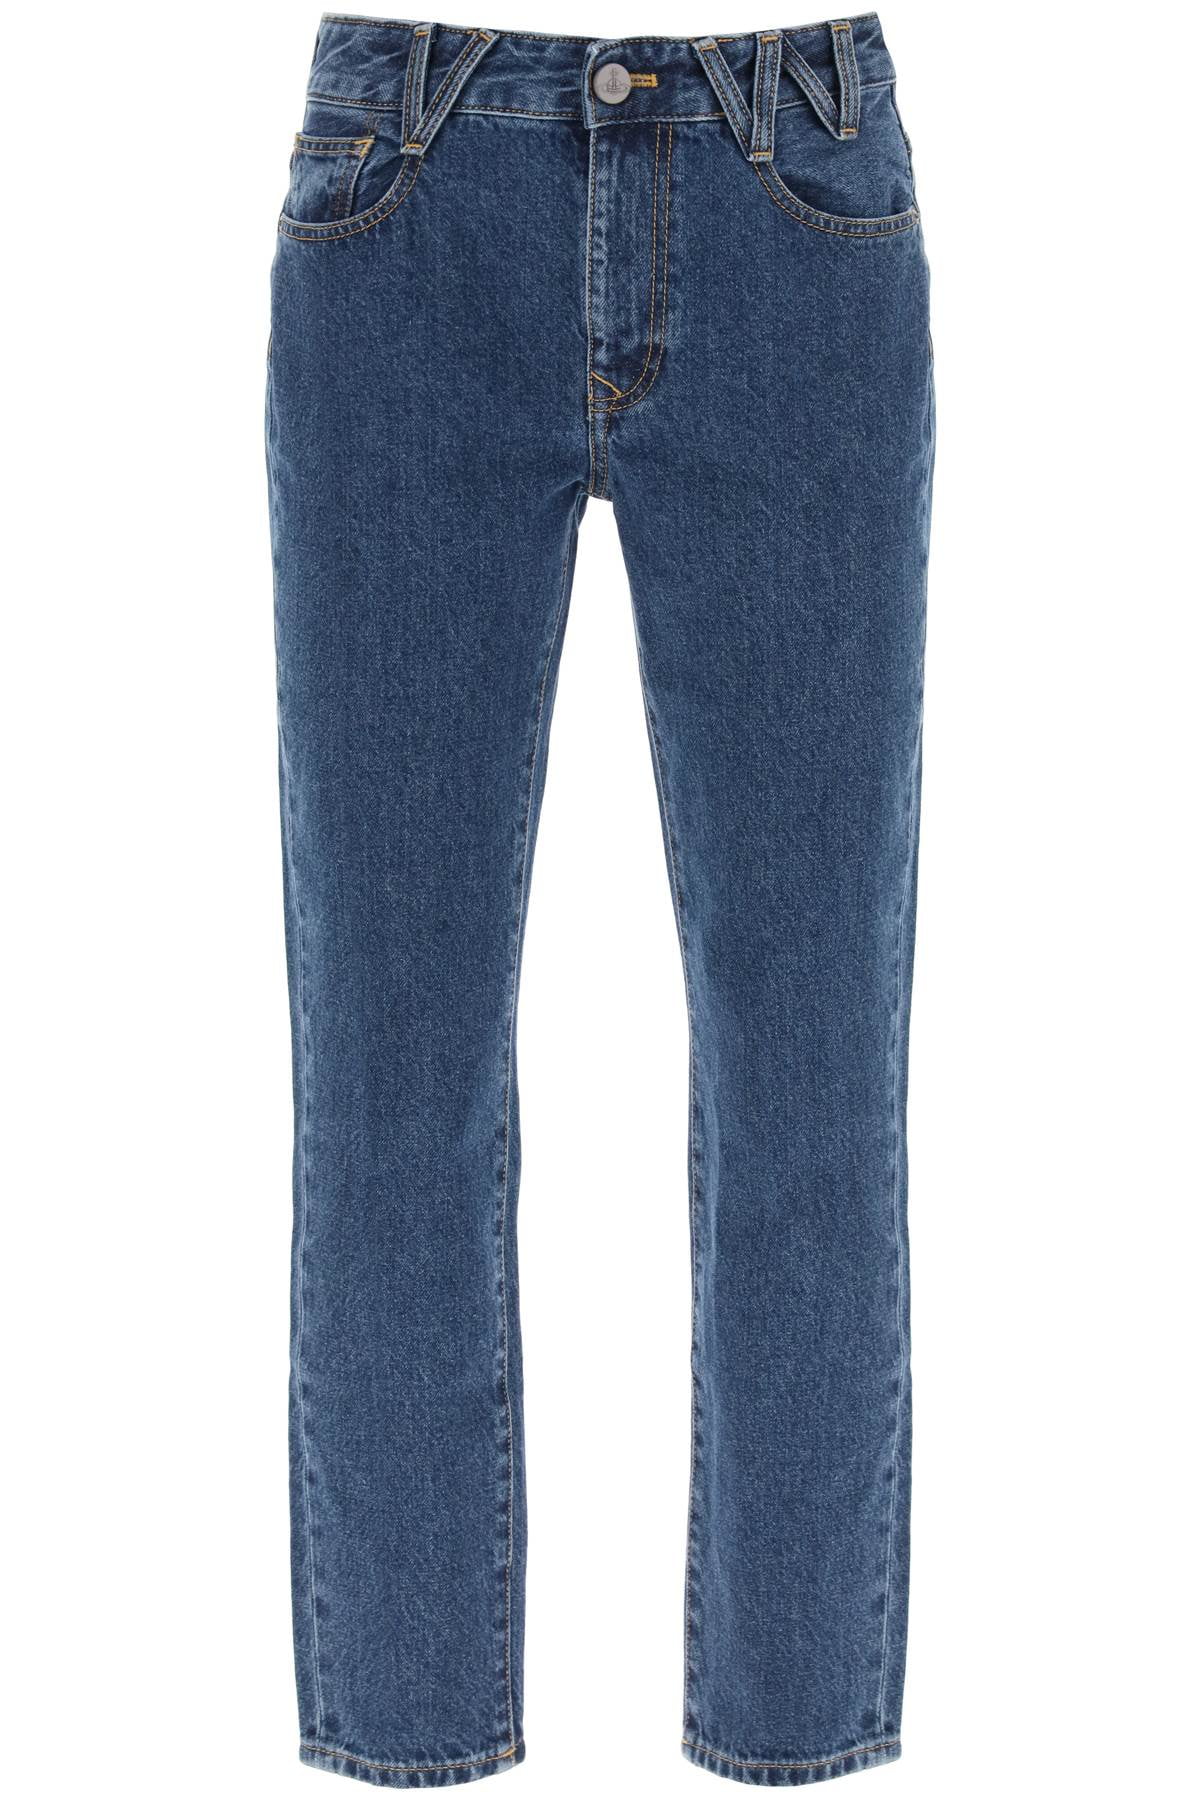 Vivienne Westwood W Harris Straight Leg Jeans Women - Walmart.com